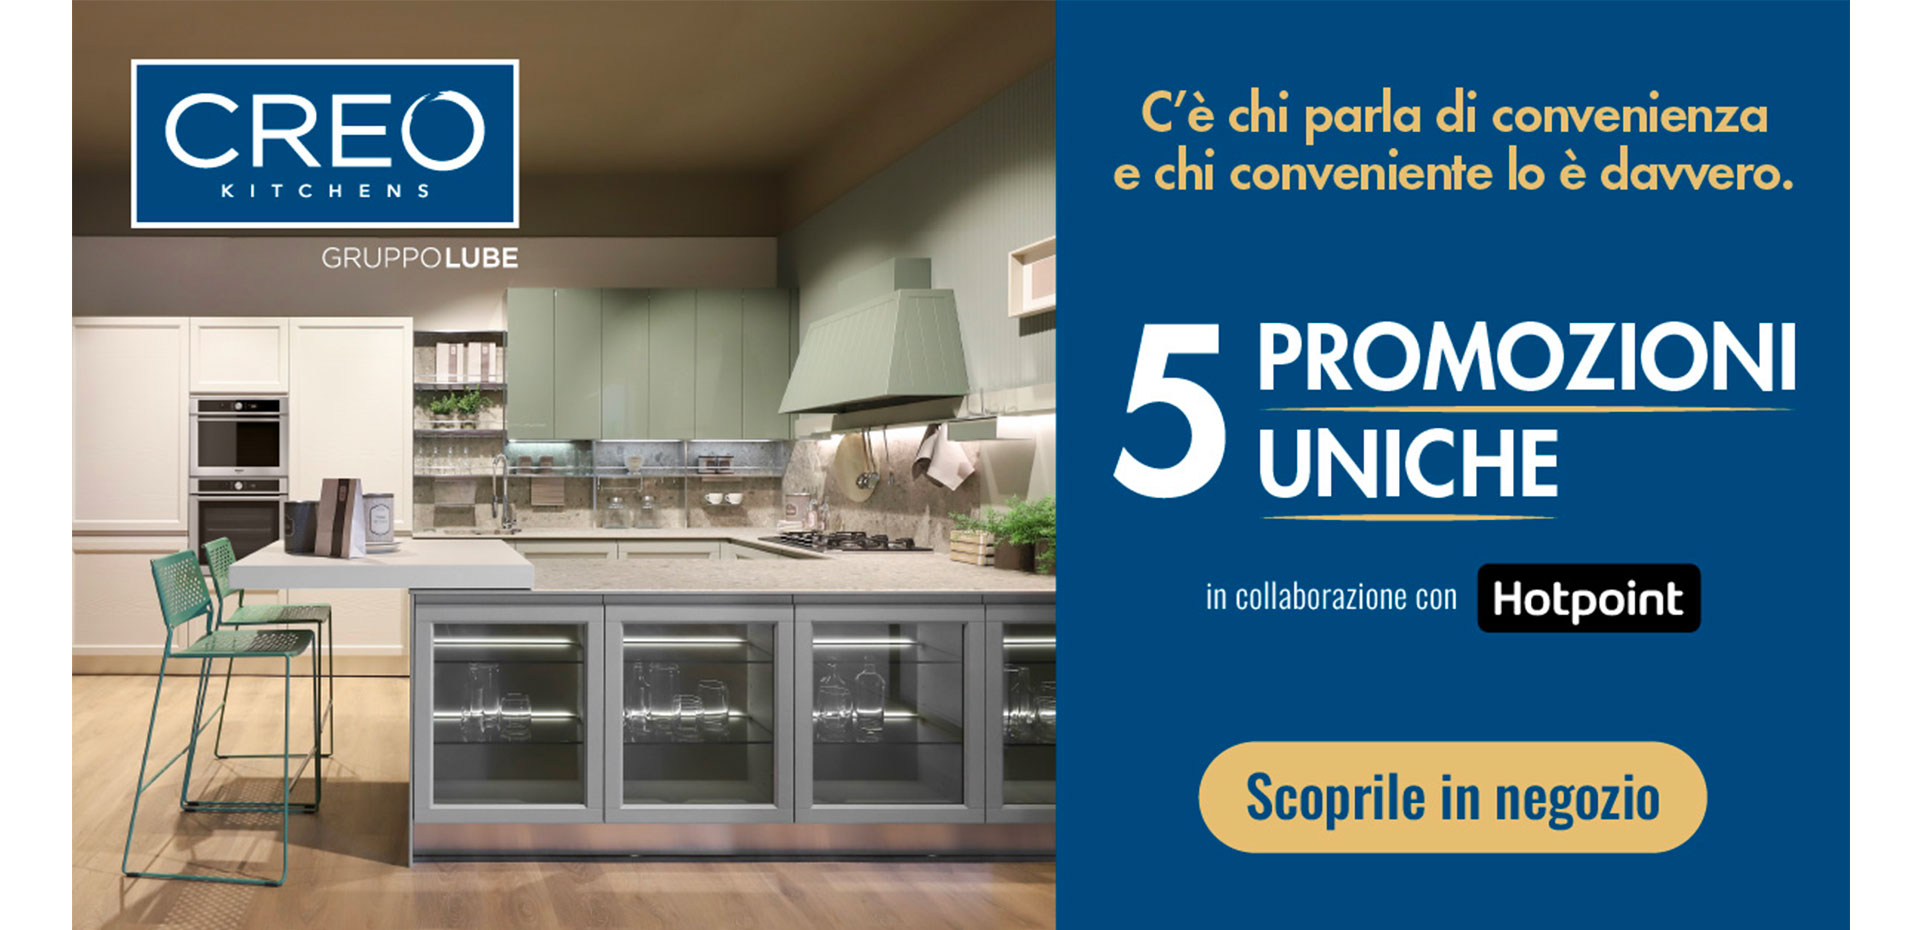 5 promozioni uniche sui modelli CREO Kitchens in collaborazione con Hotpoint. Hai tempo fino al 03 dicembre! - LUBE CREO Store Guidonia (Roma)